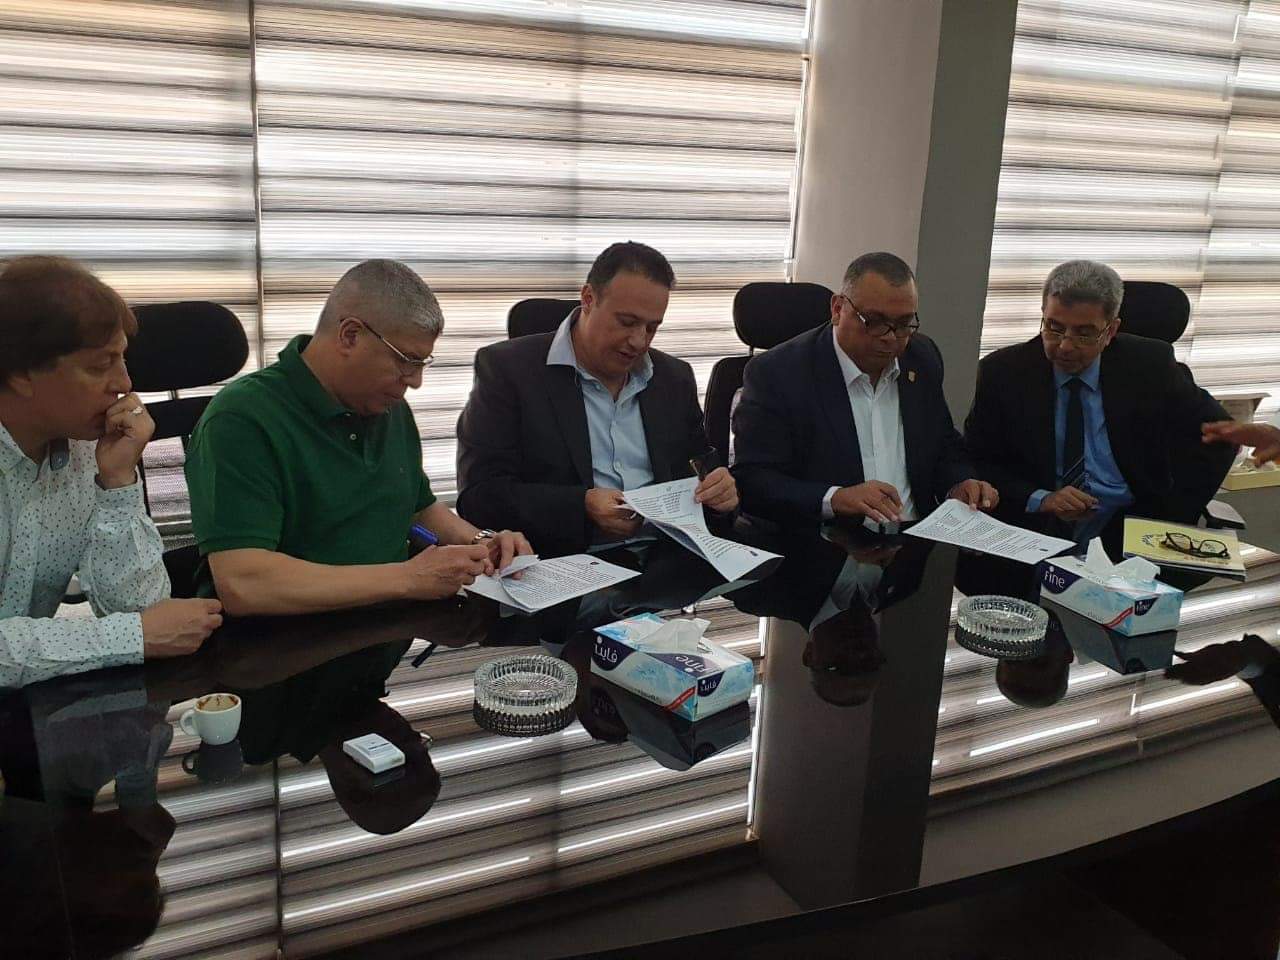 نادي الاتحاد السكندري يوقع رسميا علي اتفاقية المشاركة بالبطولة العربية